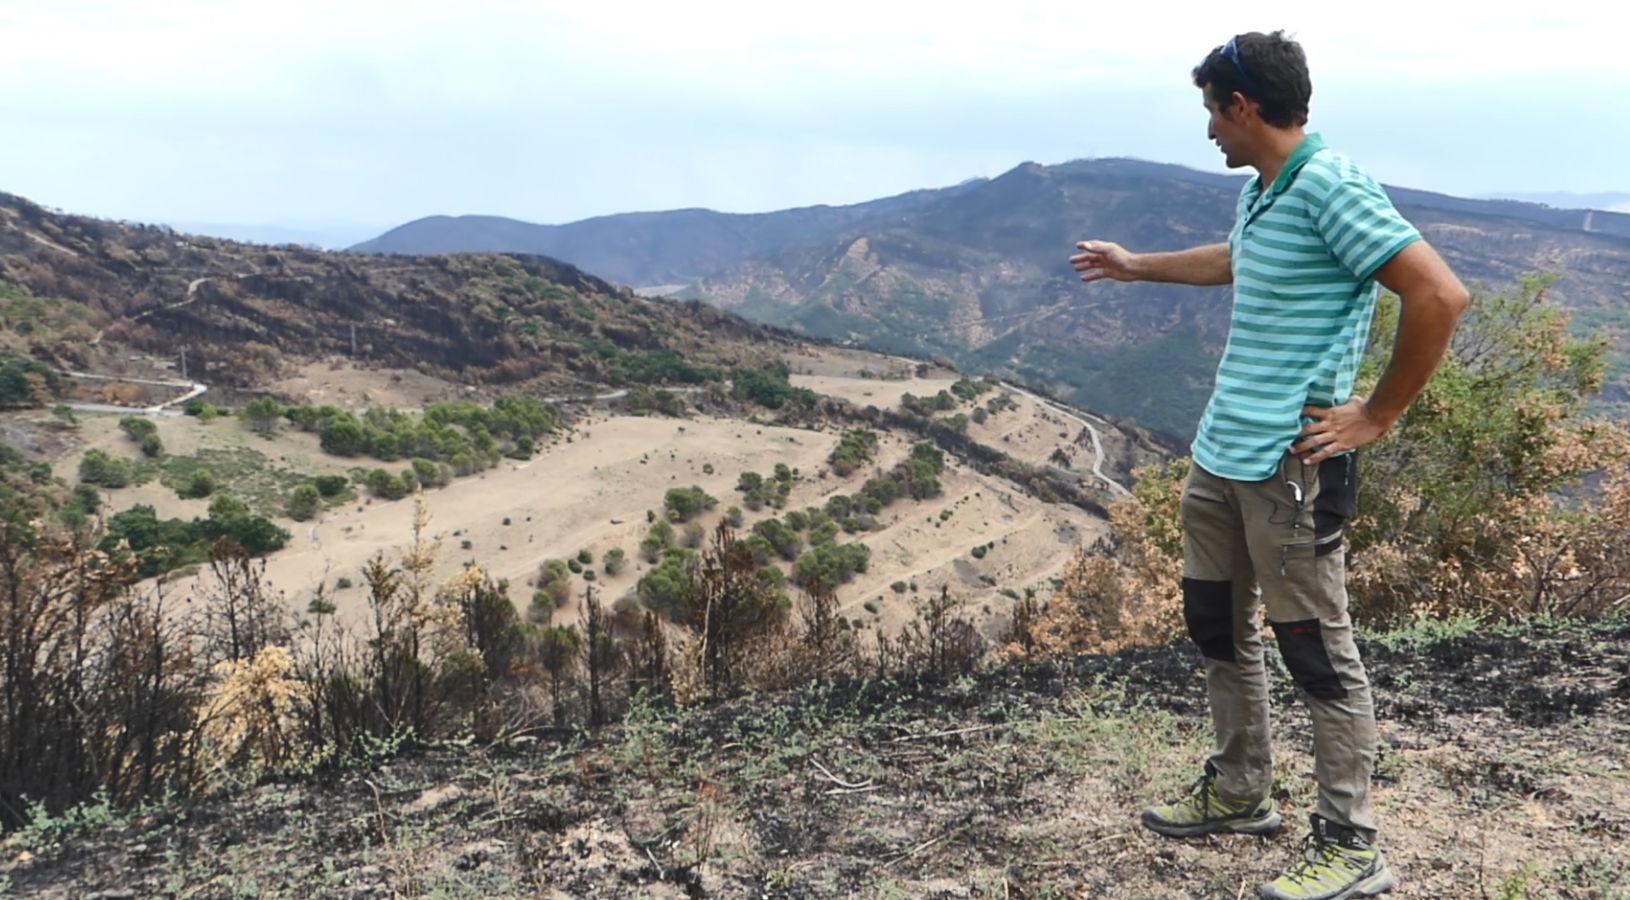 Fotografía de un hombre observando un paisaje quemado.